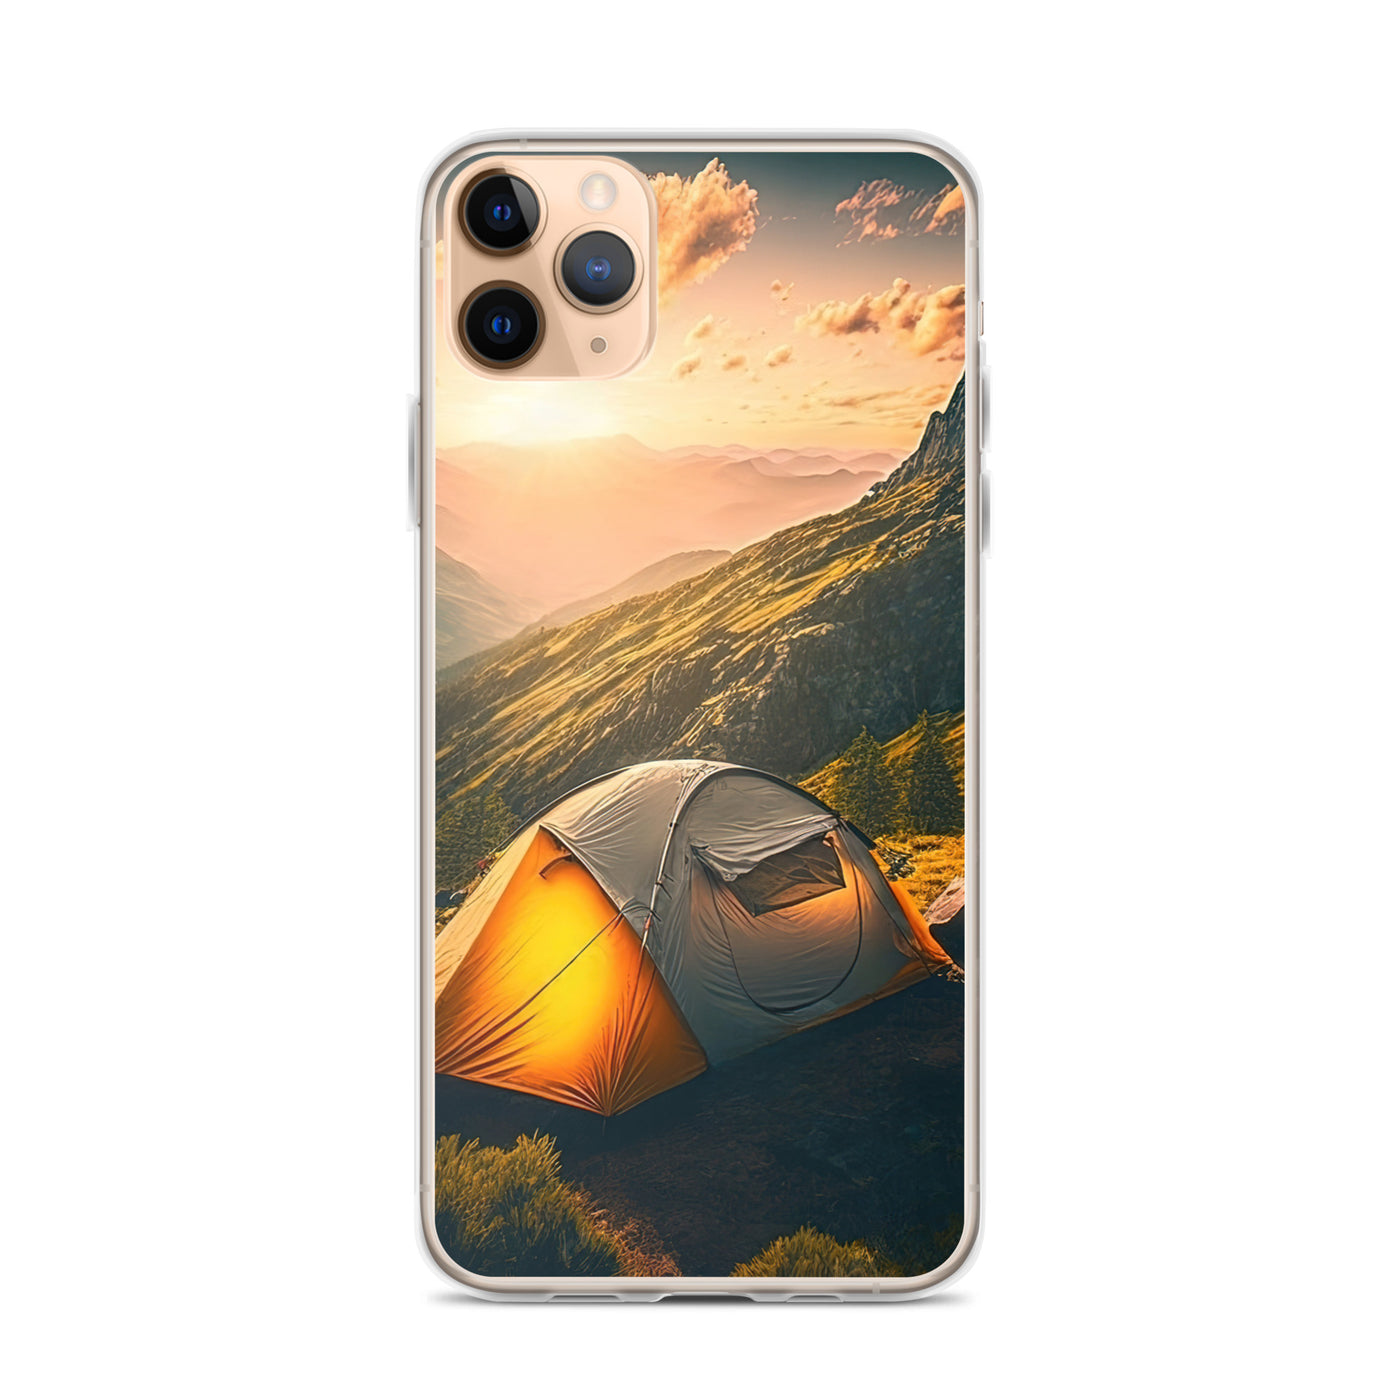 Zelt auf Berg im Sonnenaufgang - Landschafts - iPhone Schutzhülle (durchsichtig) camping xxx iPhone 11 Pro Max